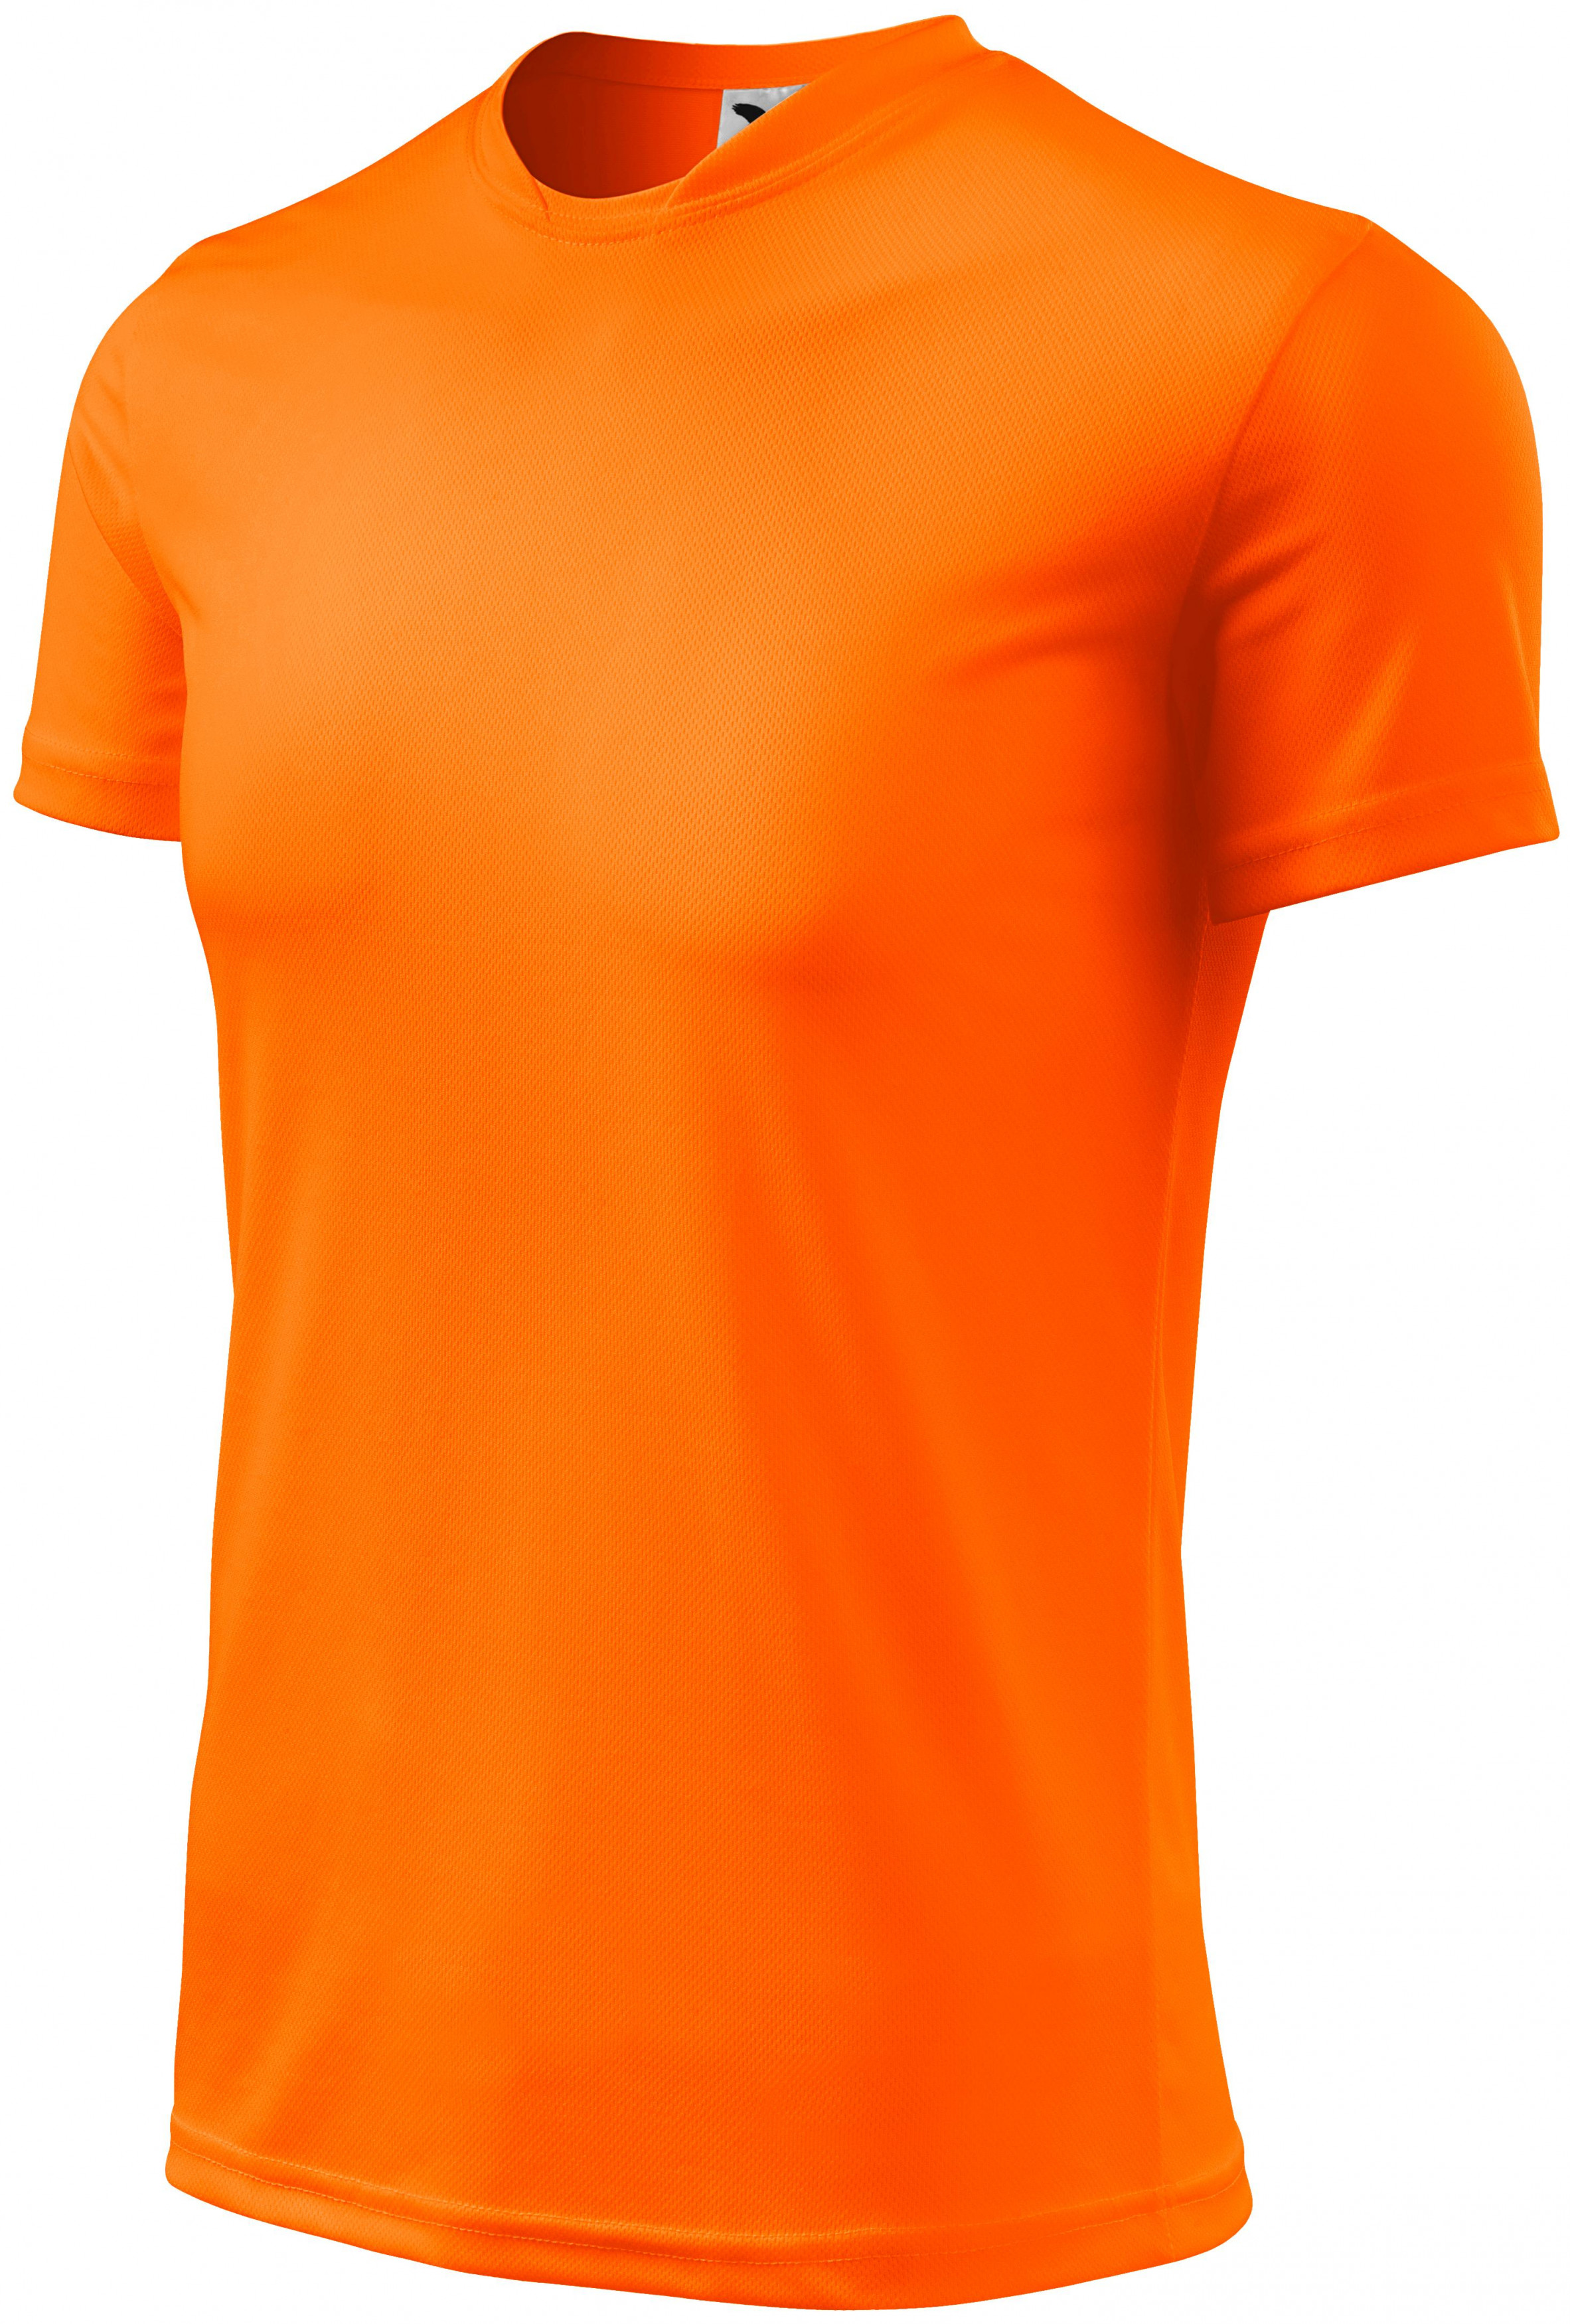 Športové tričko detské, neónová oranžová, 134cm / 8rokov